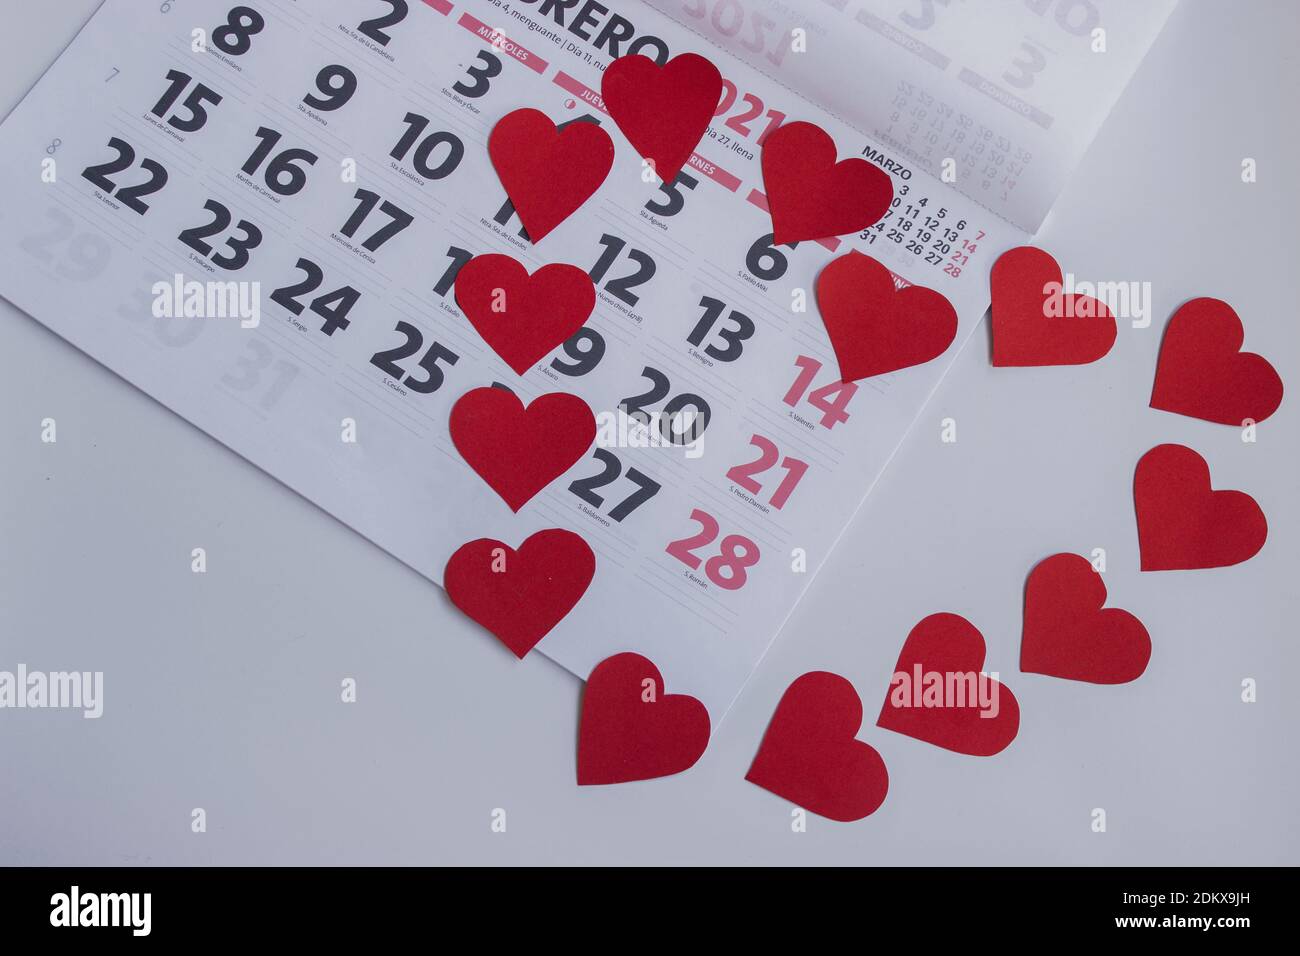 Konzeptionelles Bild von 2021. Set von Herzen bilden eine Herzform auf dem Februar 2021 Kalender um Valentinstag. 14. Februar mit Herzen markiert. Stockfoto